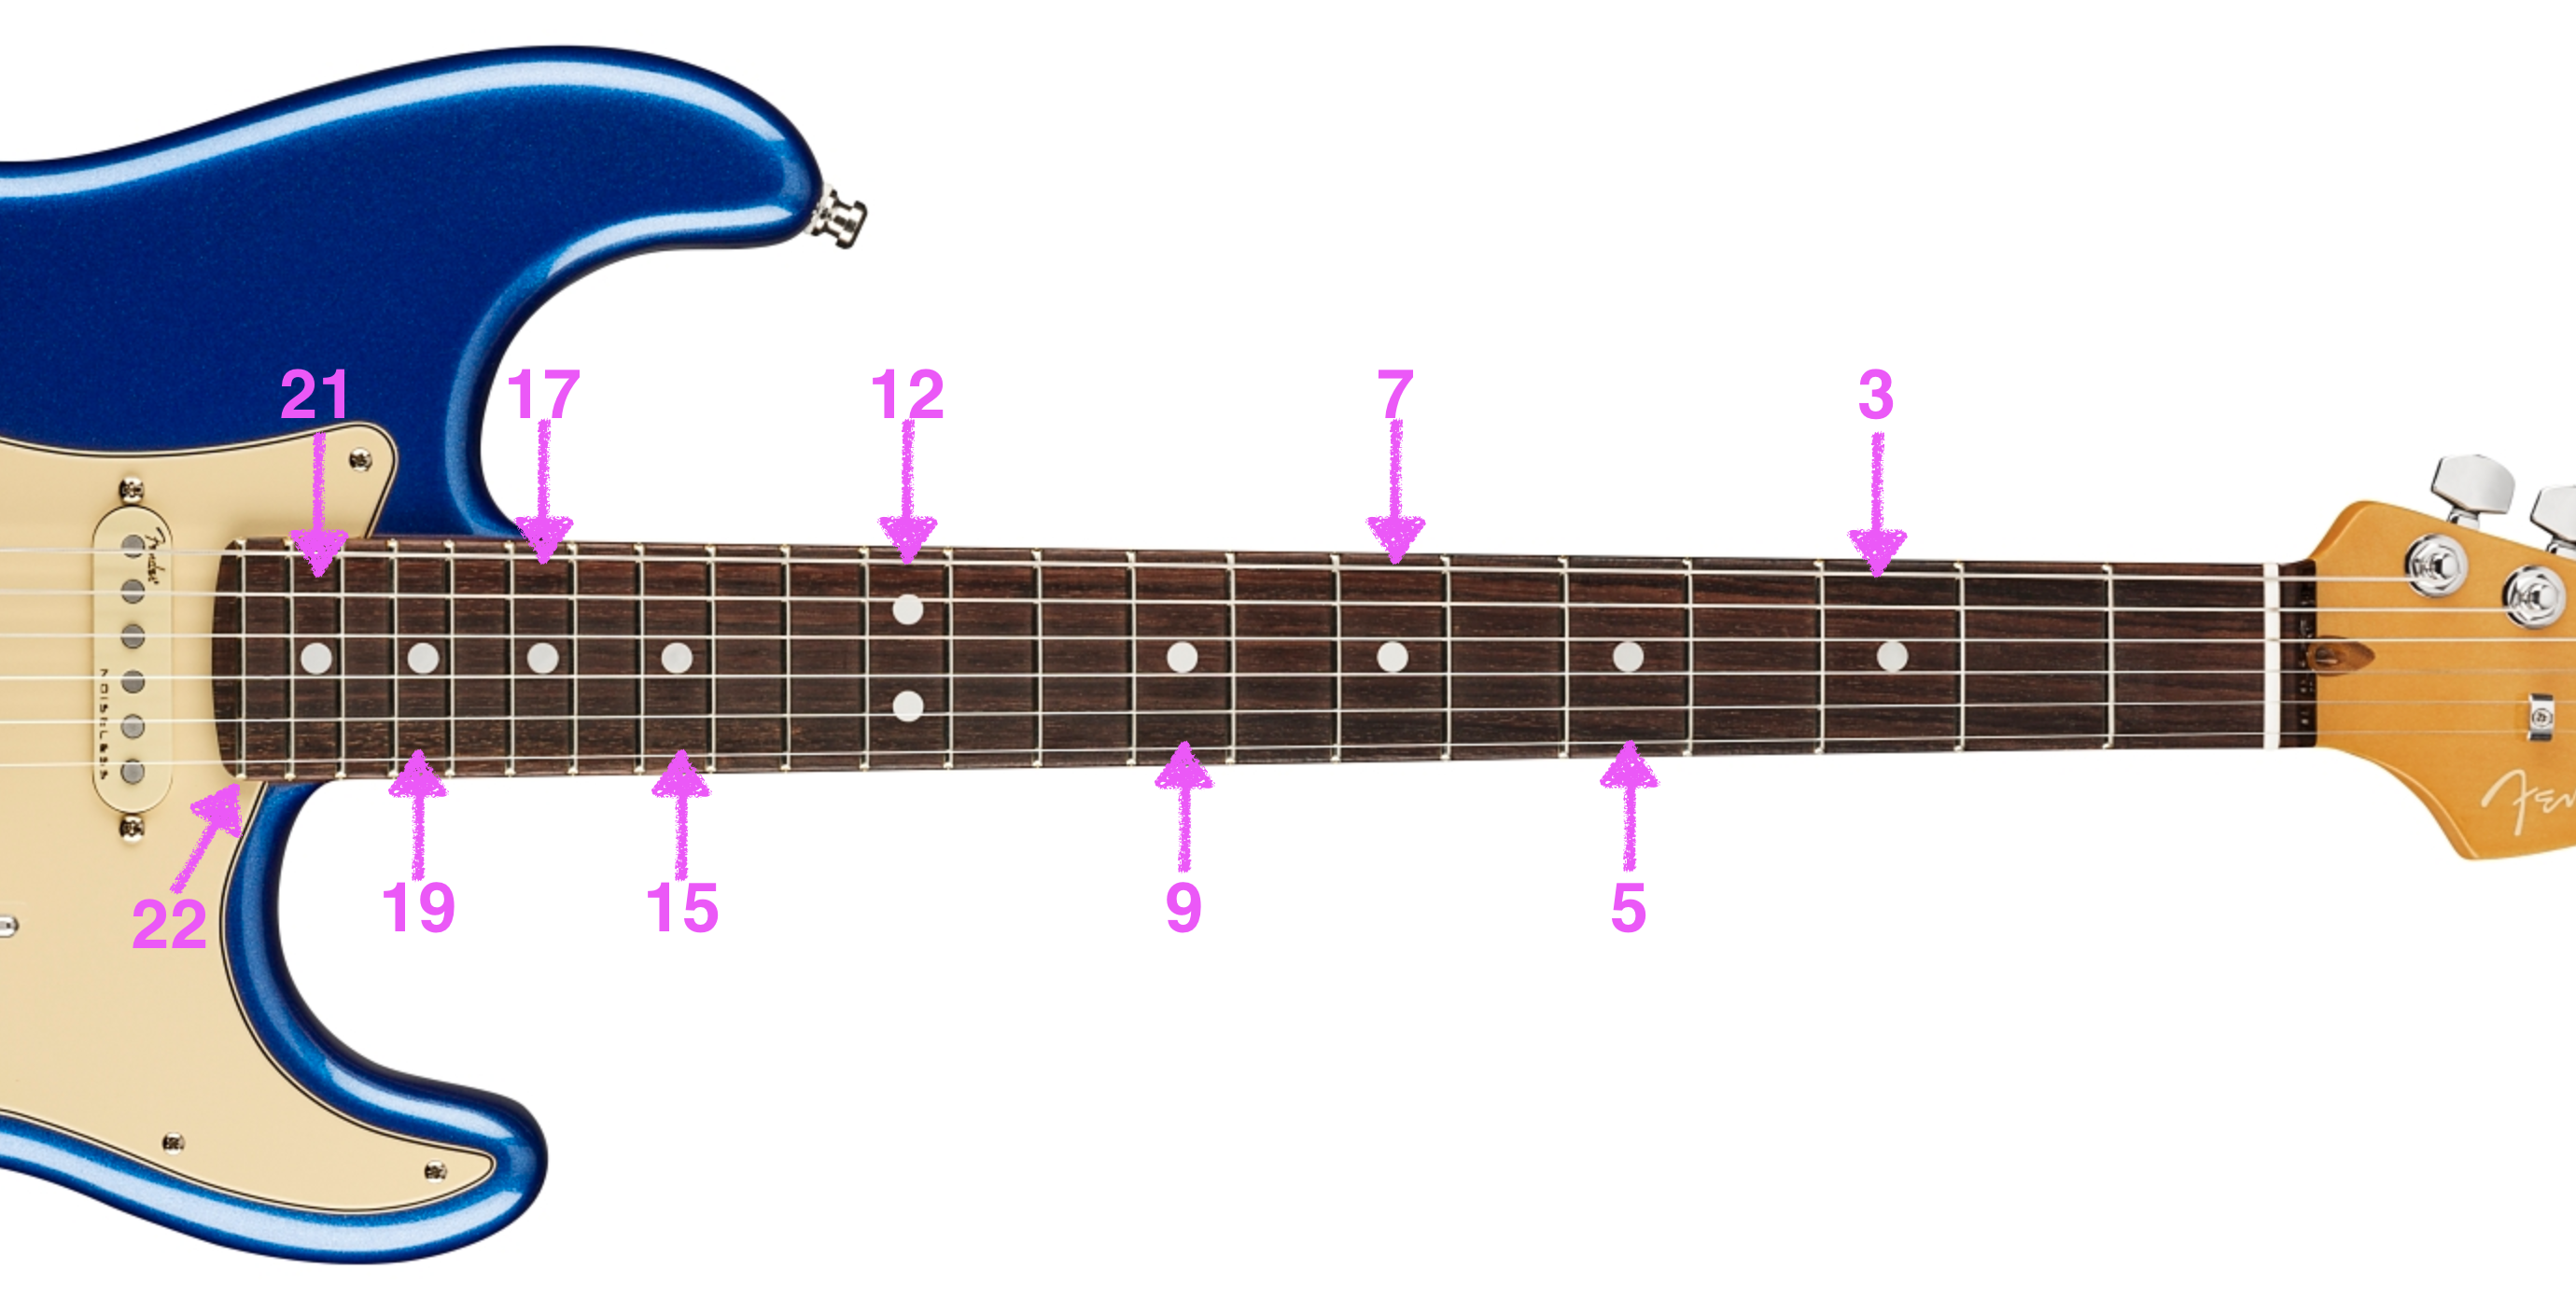 Fender（フェンダー）・ストラトキャスターの特徴とモデル選びについて 